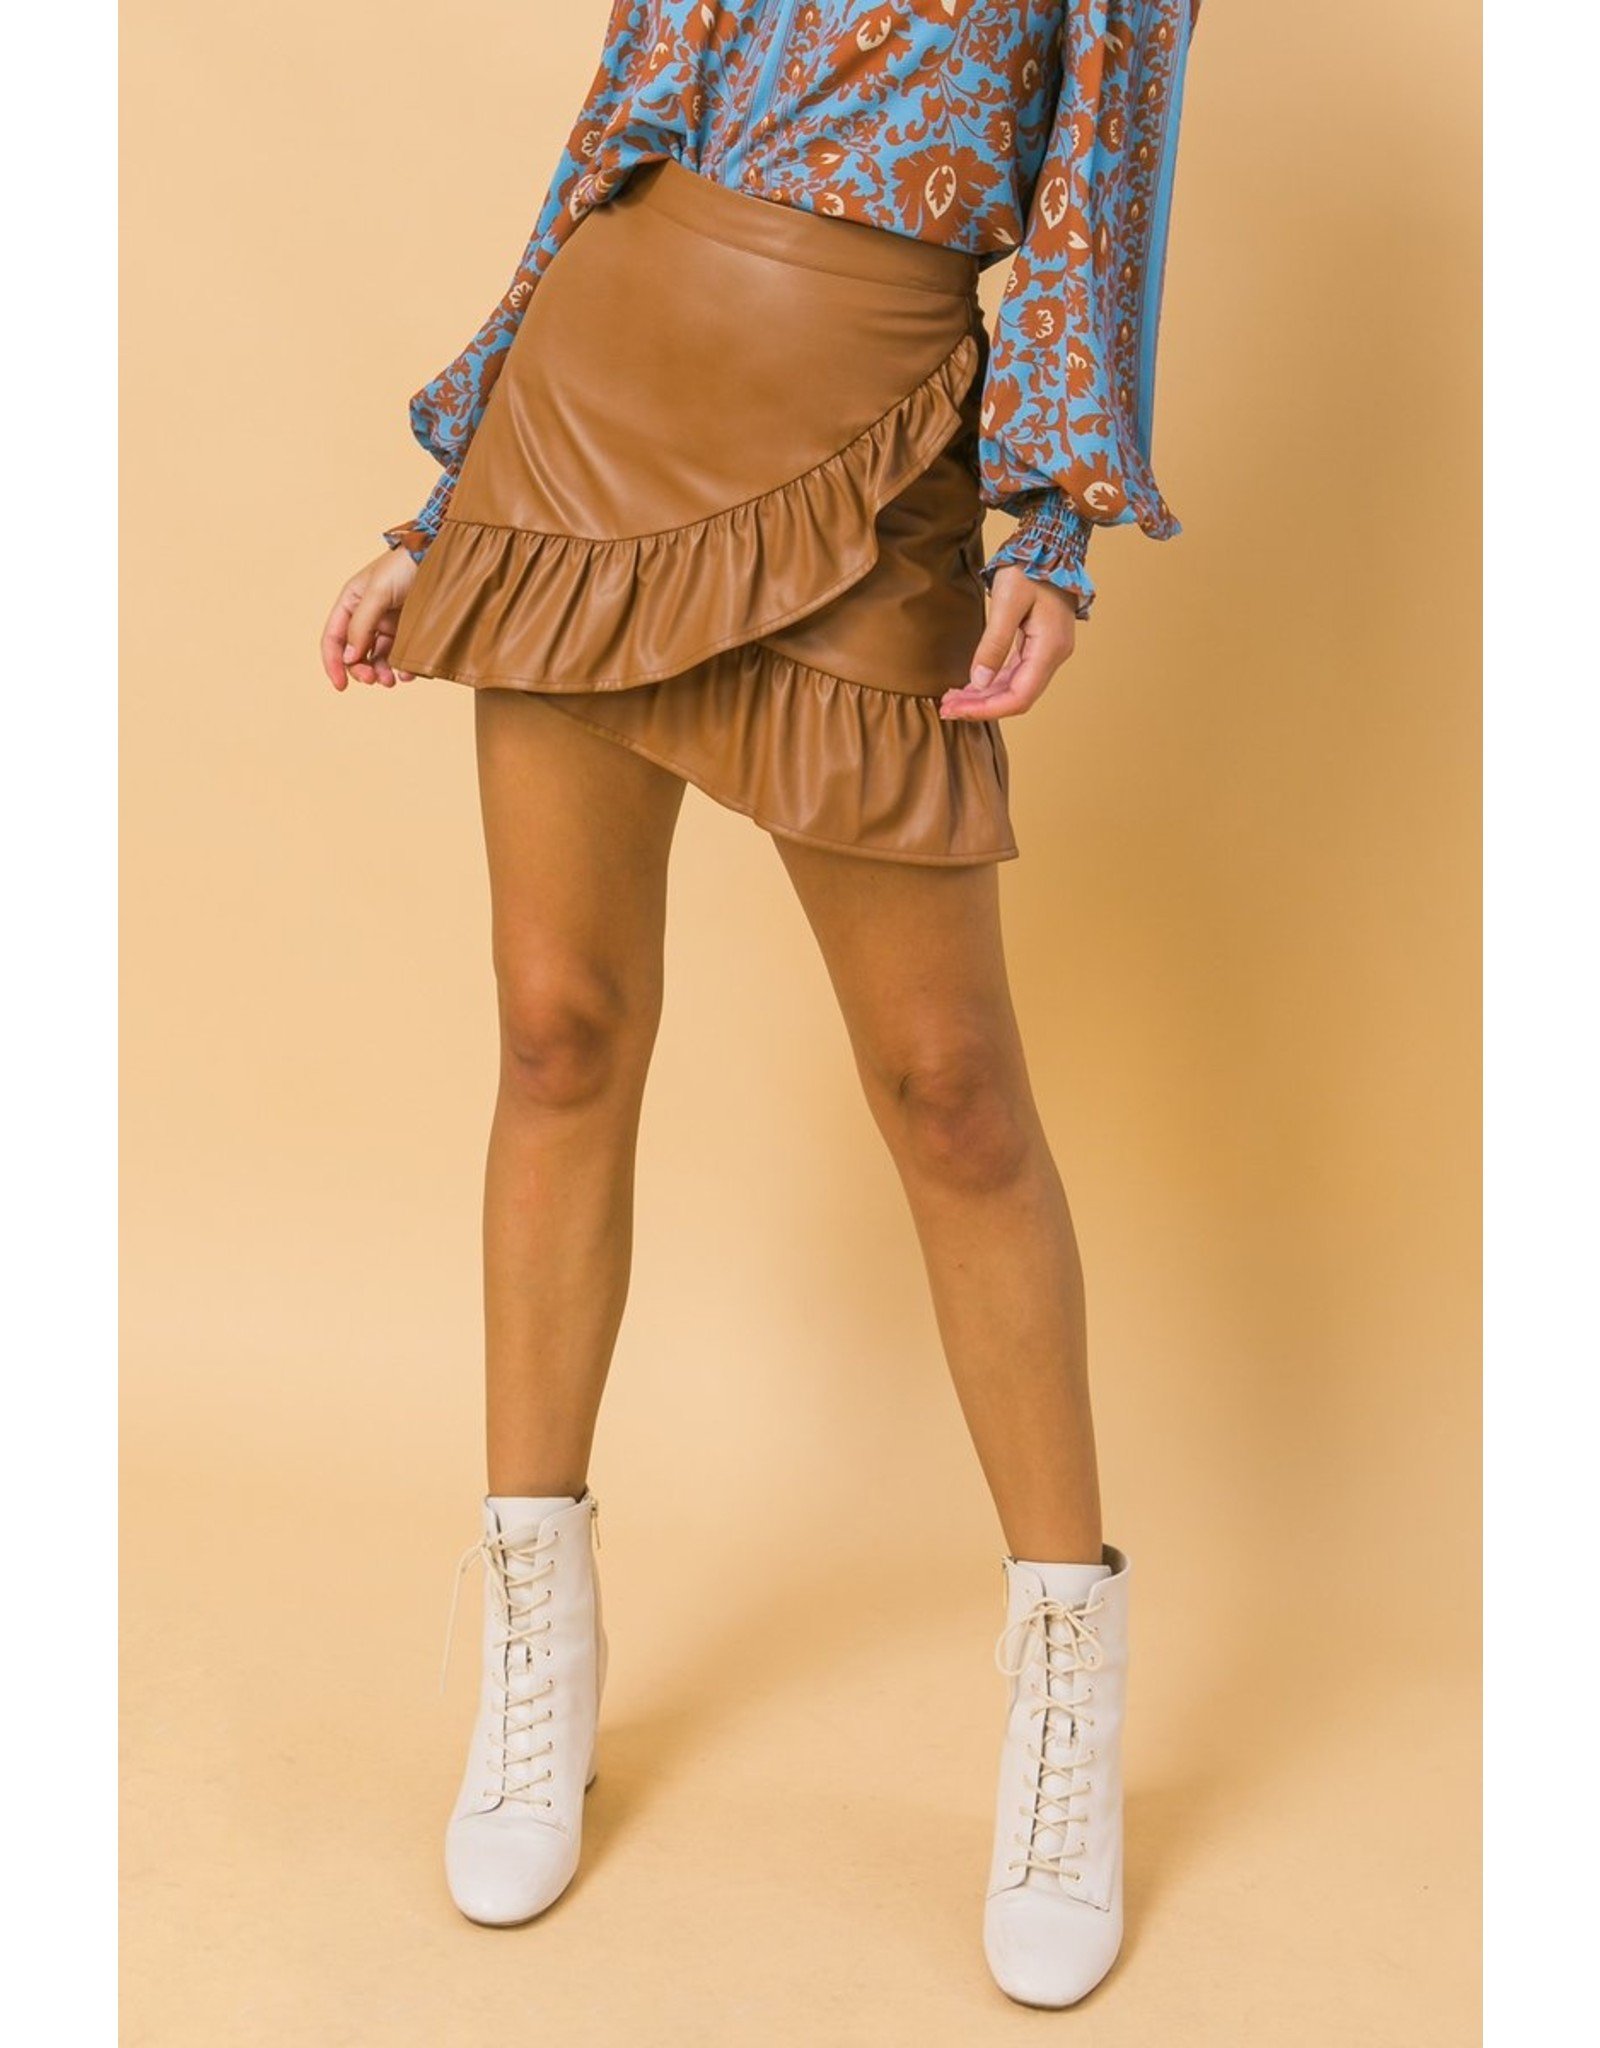 brown ruffle skirt